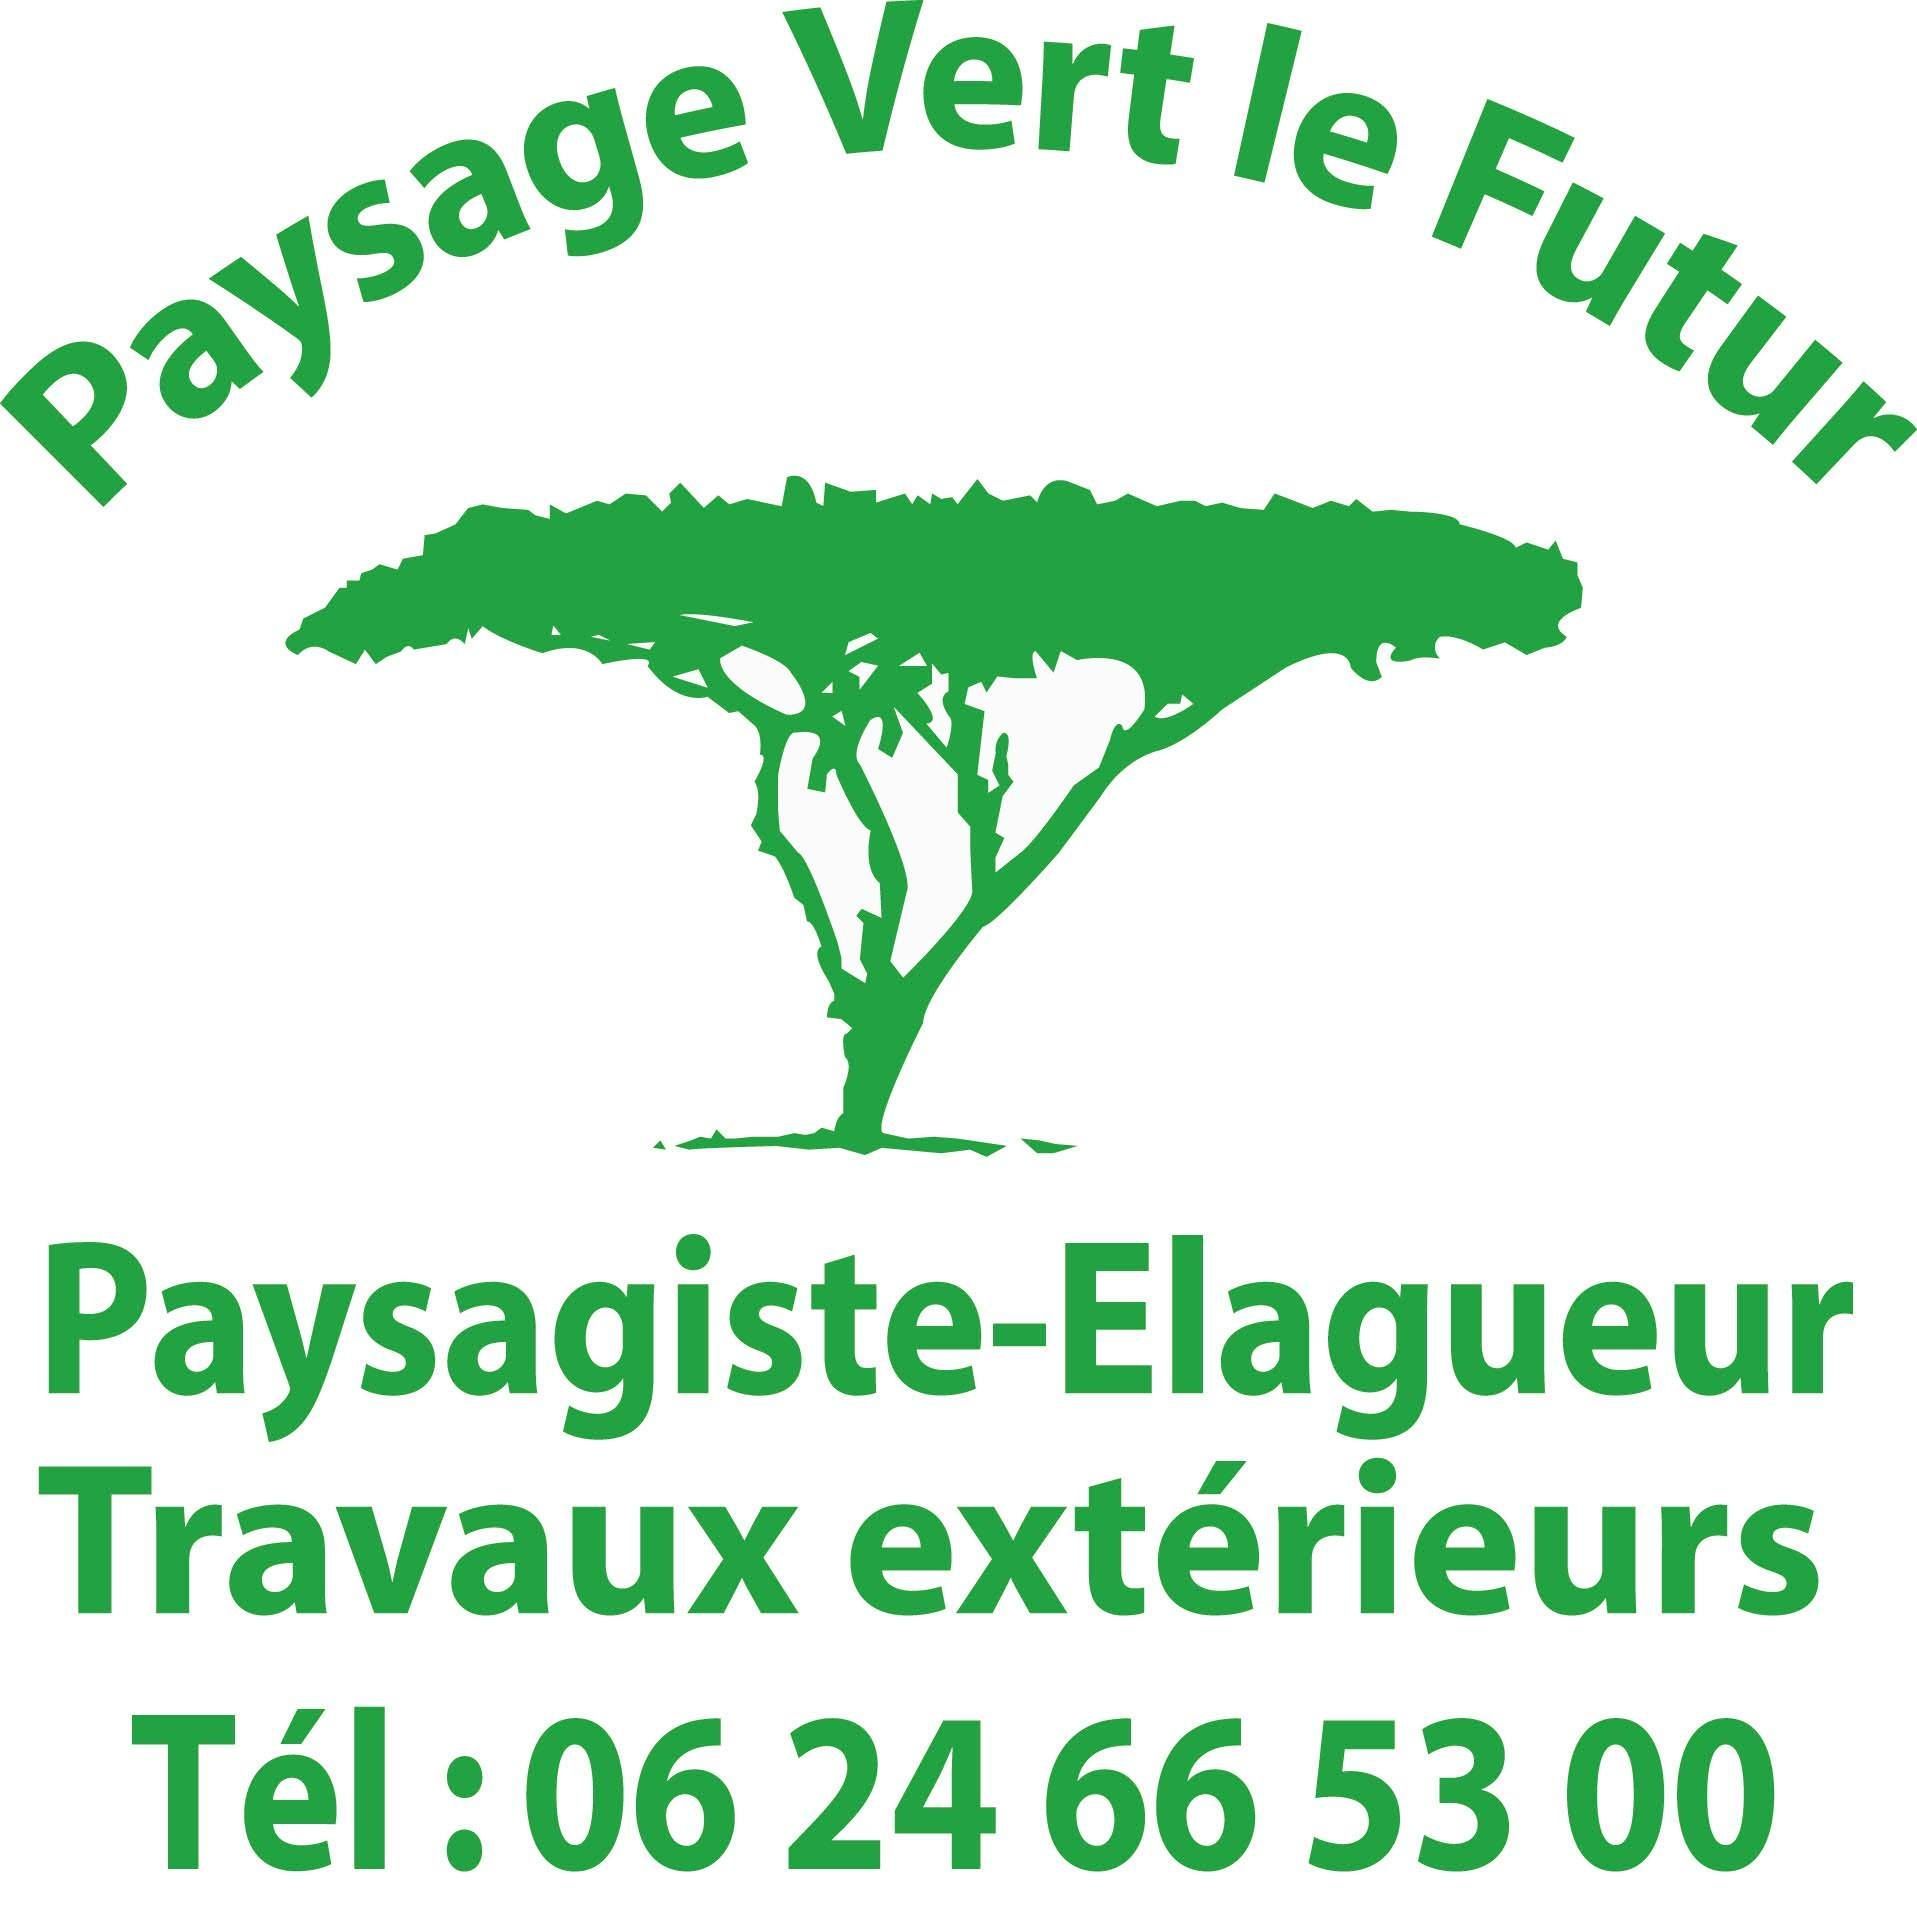 Logo Paysage Vert le Futur